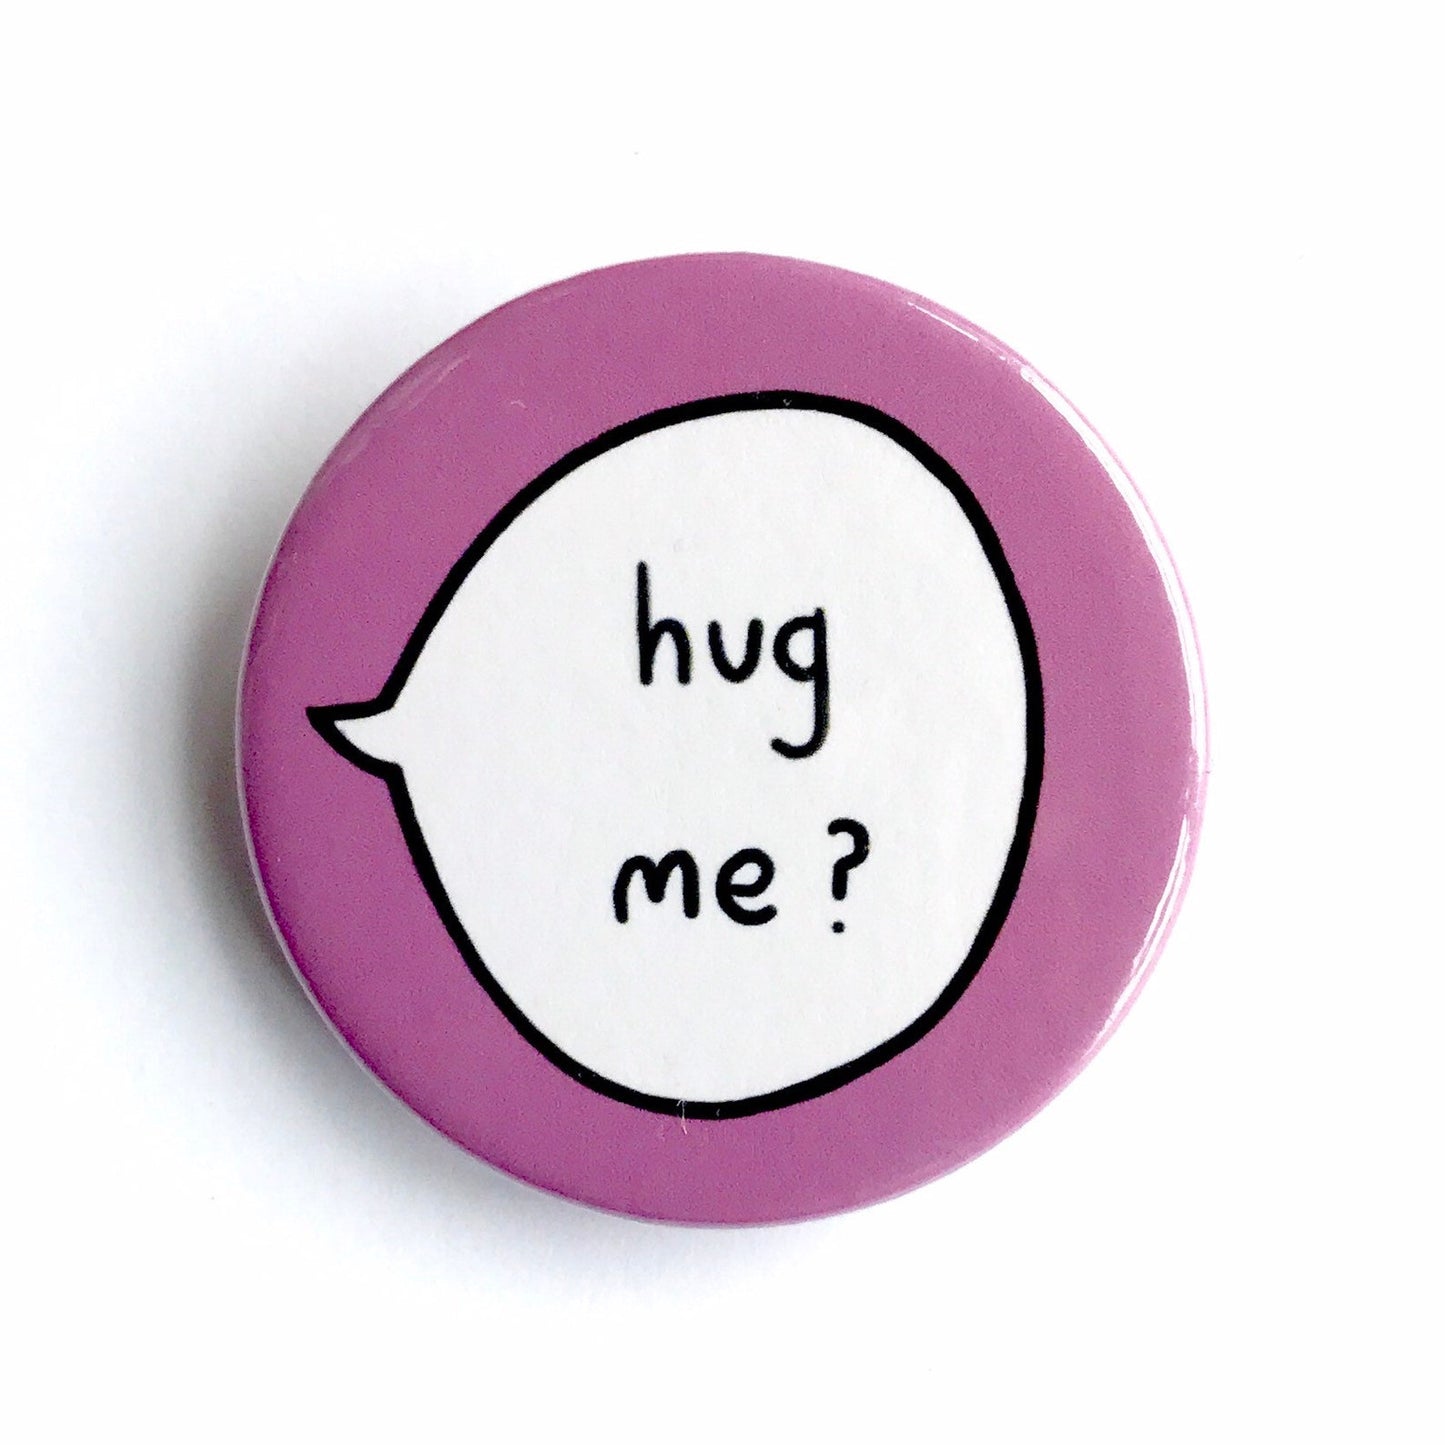 Hug Me? - Pin Badge